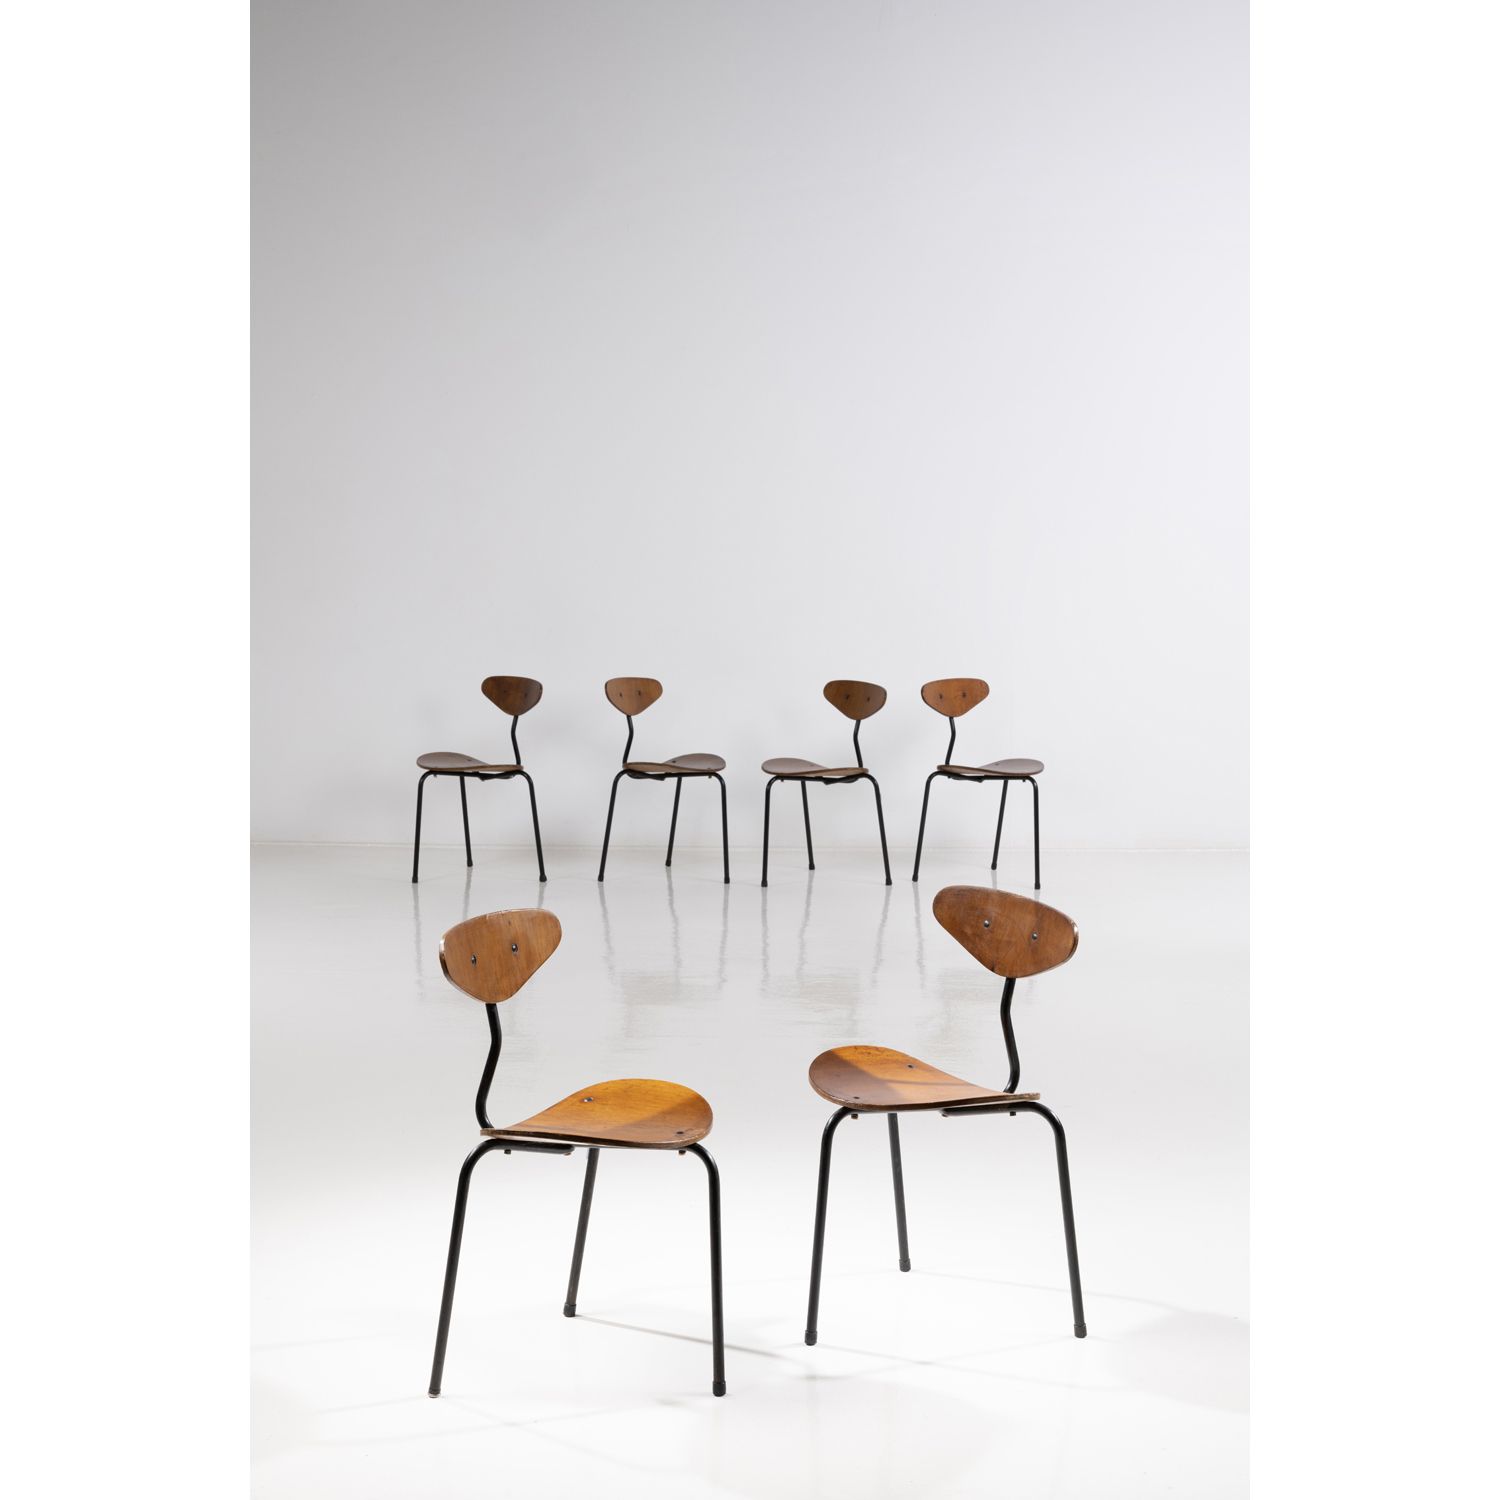 Null 欧内斯特-赛(1913-1964)

独角兽

六把椅子的套间

柚木和金属

设计于1958年

高78×宽49×深47厘米

展览：1958年布鲁&hellip;